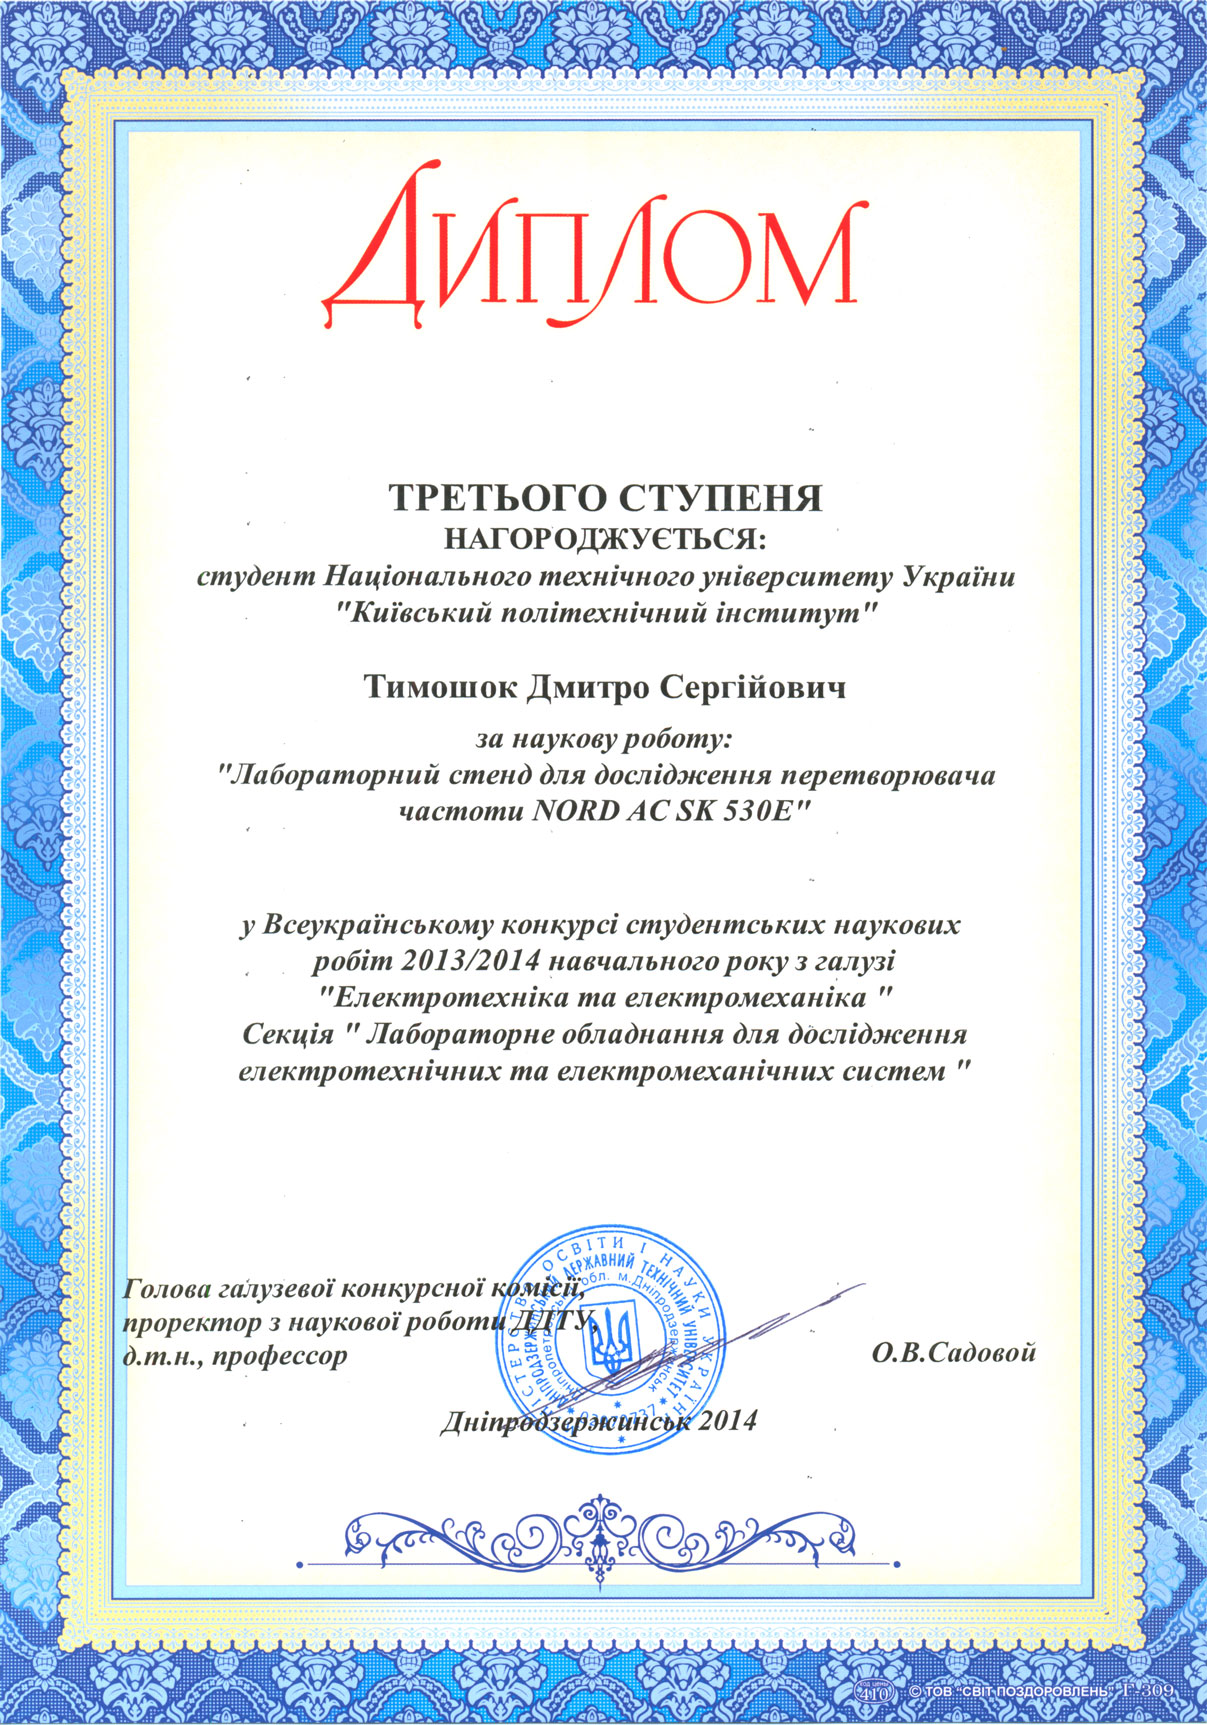 Всеукраїнський конкурс студентських наукових робіт 2014